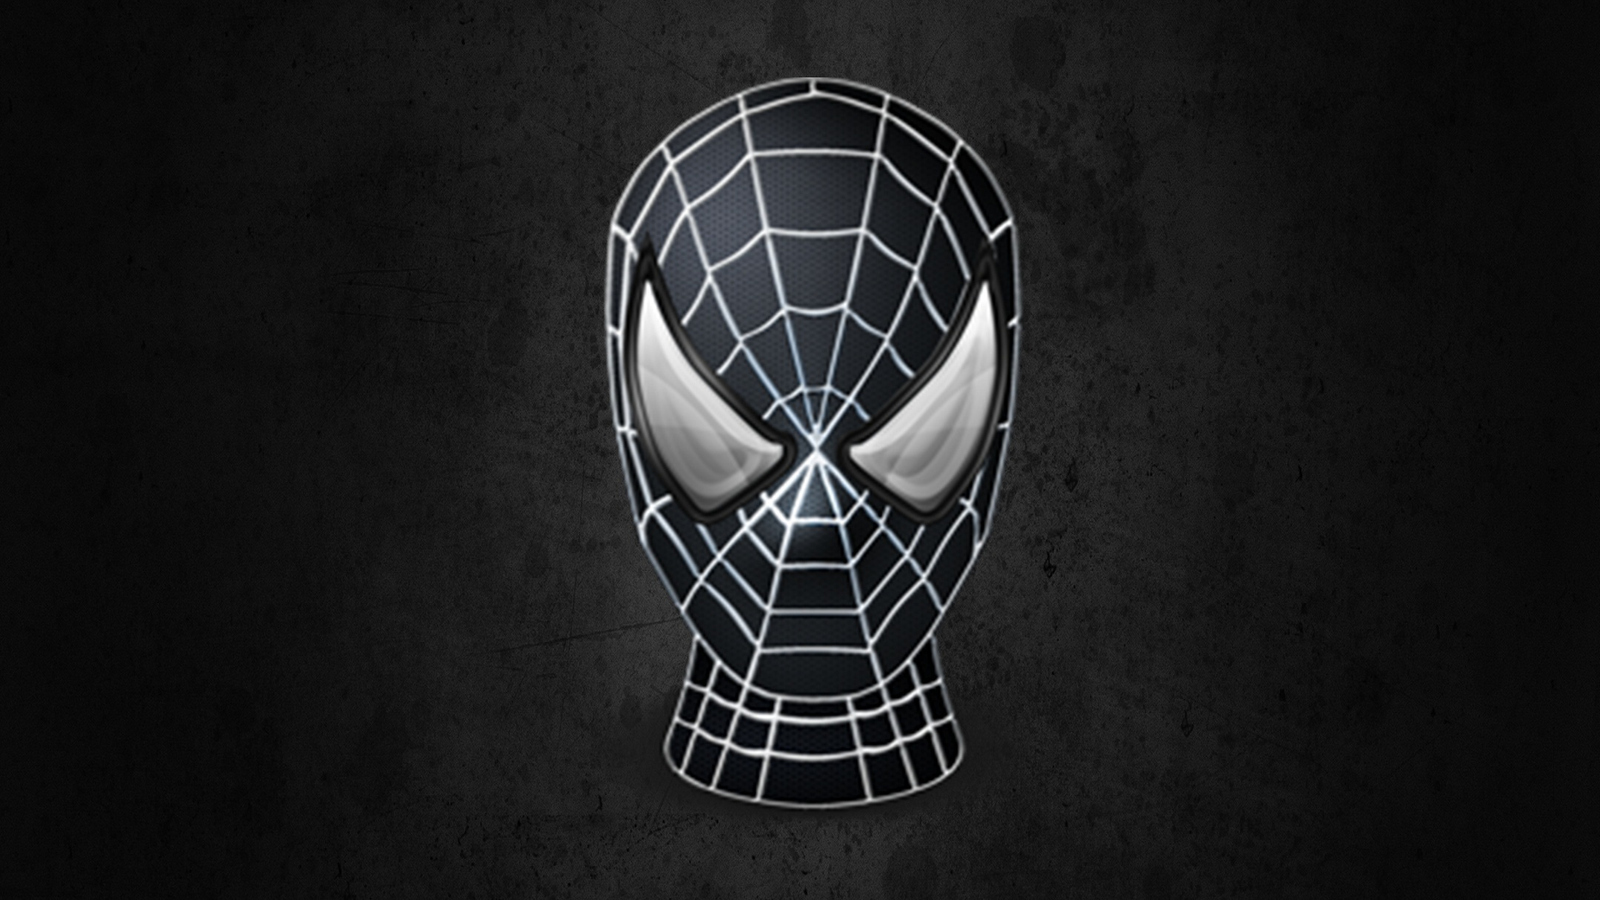 Download Spiderman Head 1, Spider man, Head Wallpaper in 1600x900 Resolution